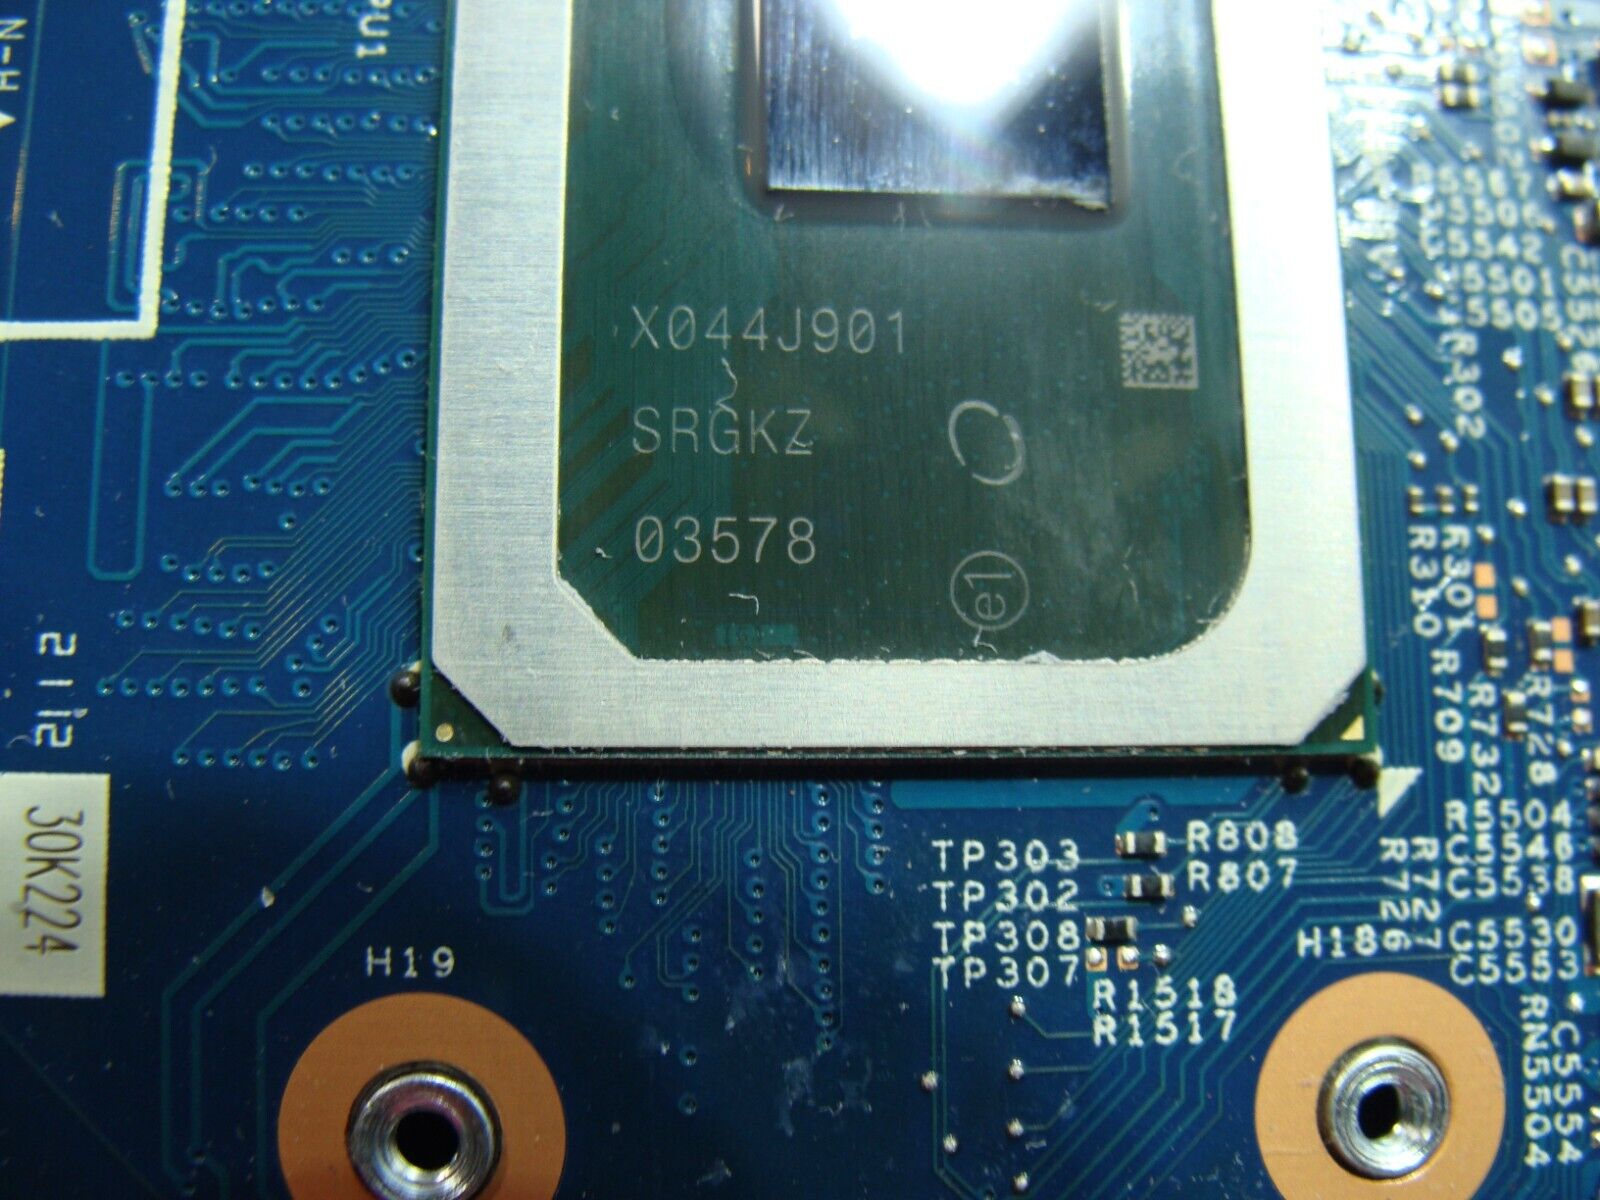 Dell Latitude 3410 15.6 Intel i5-10210U 1.6GHz Motherboard MYG77